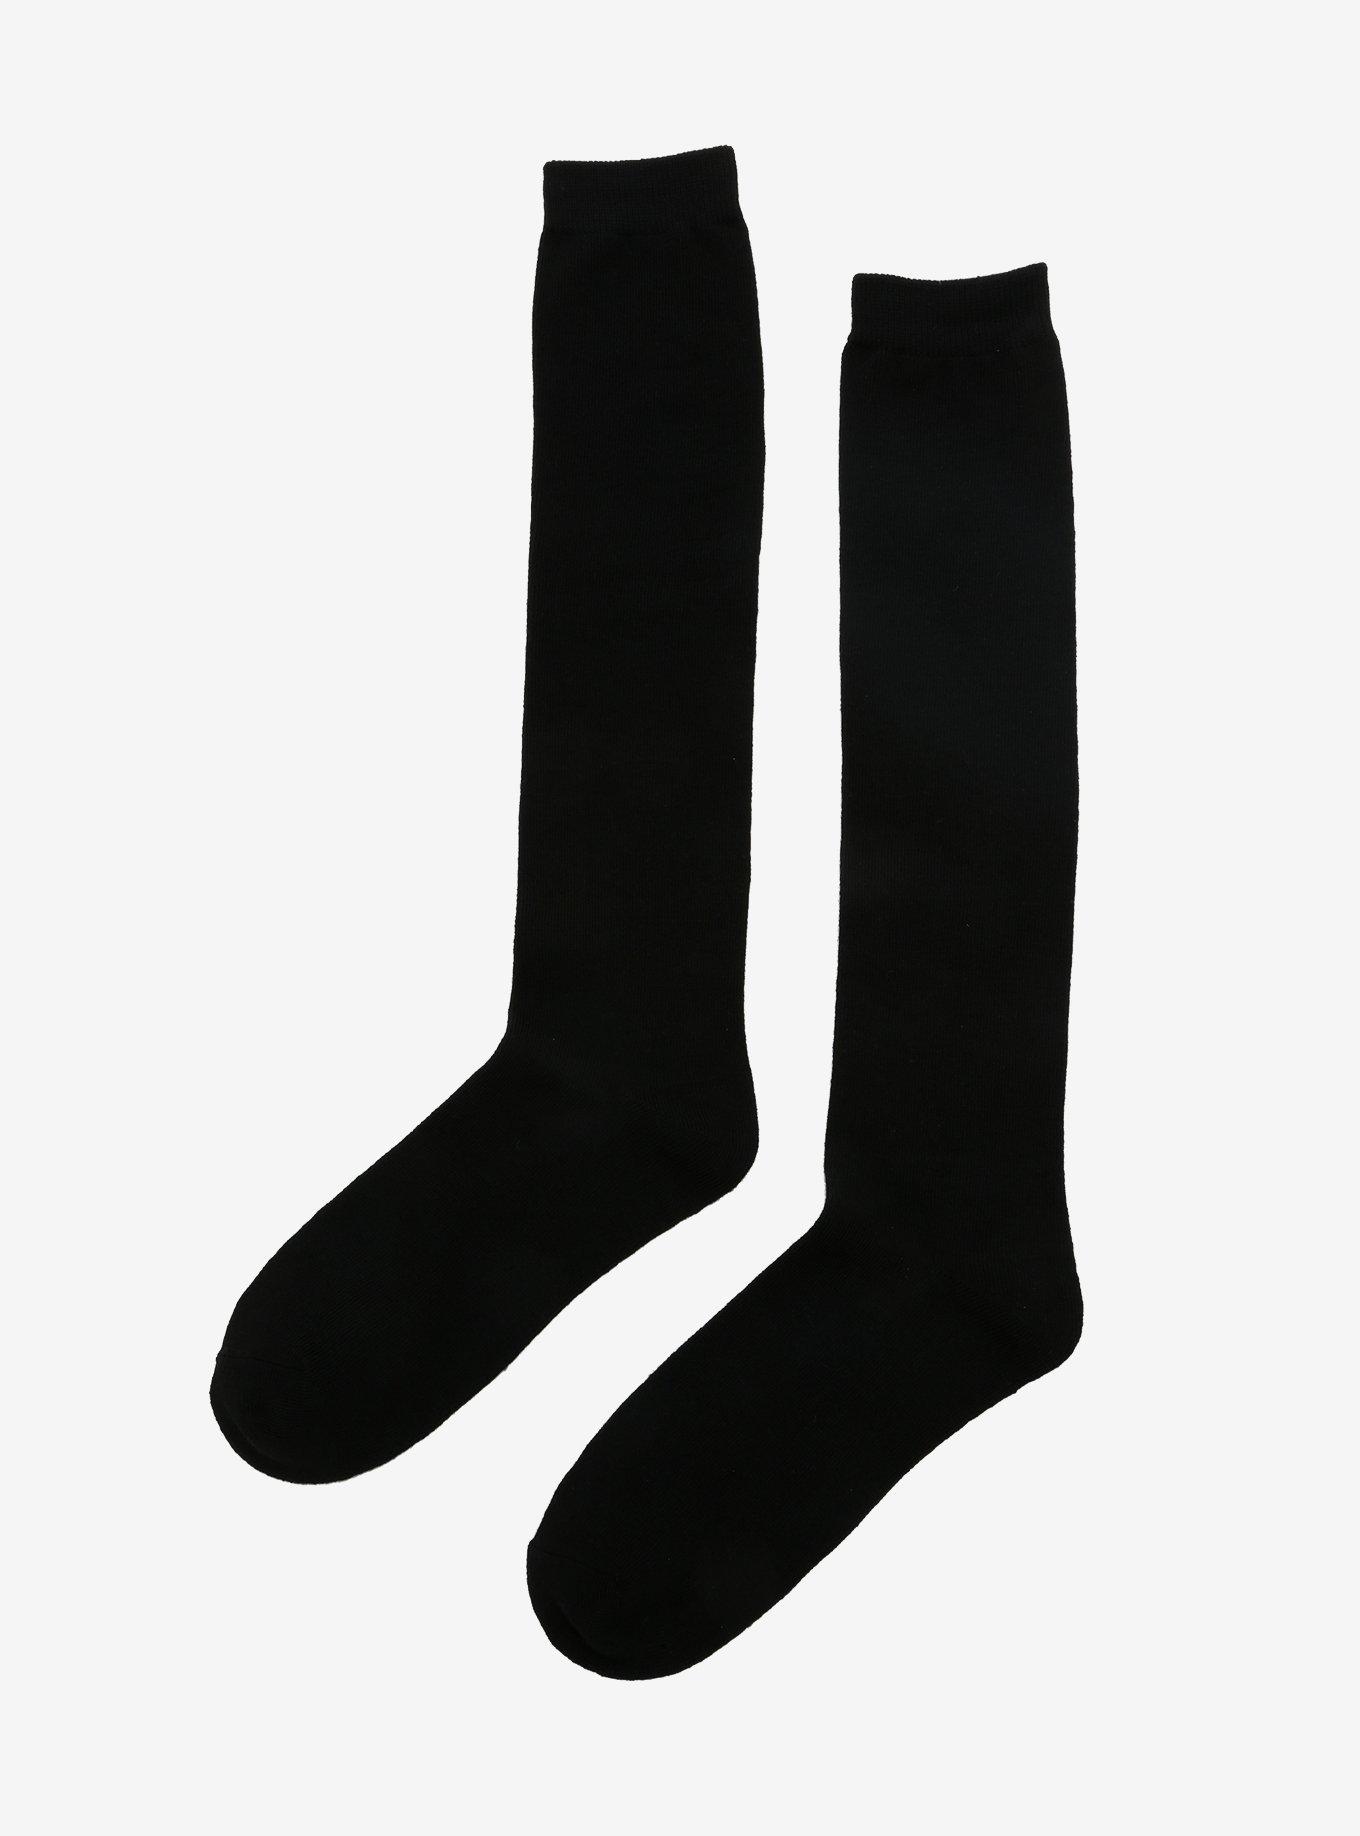 Black Knee-High Socks, , alternate